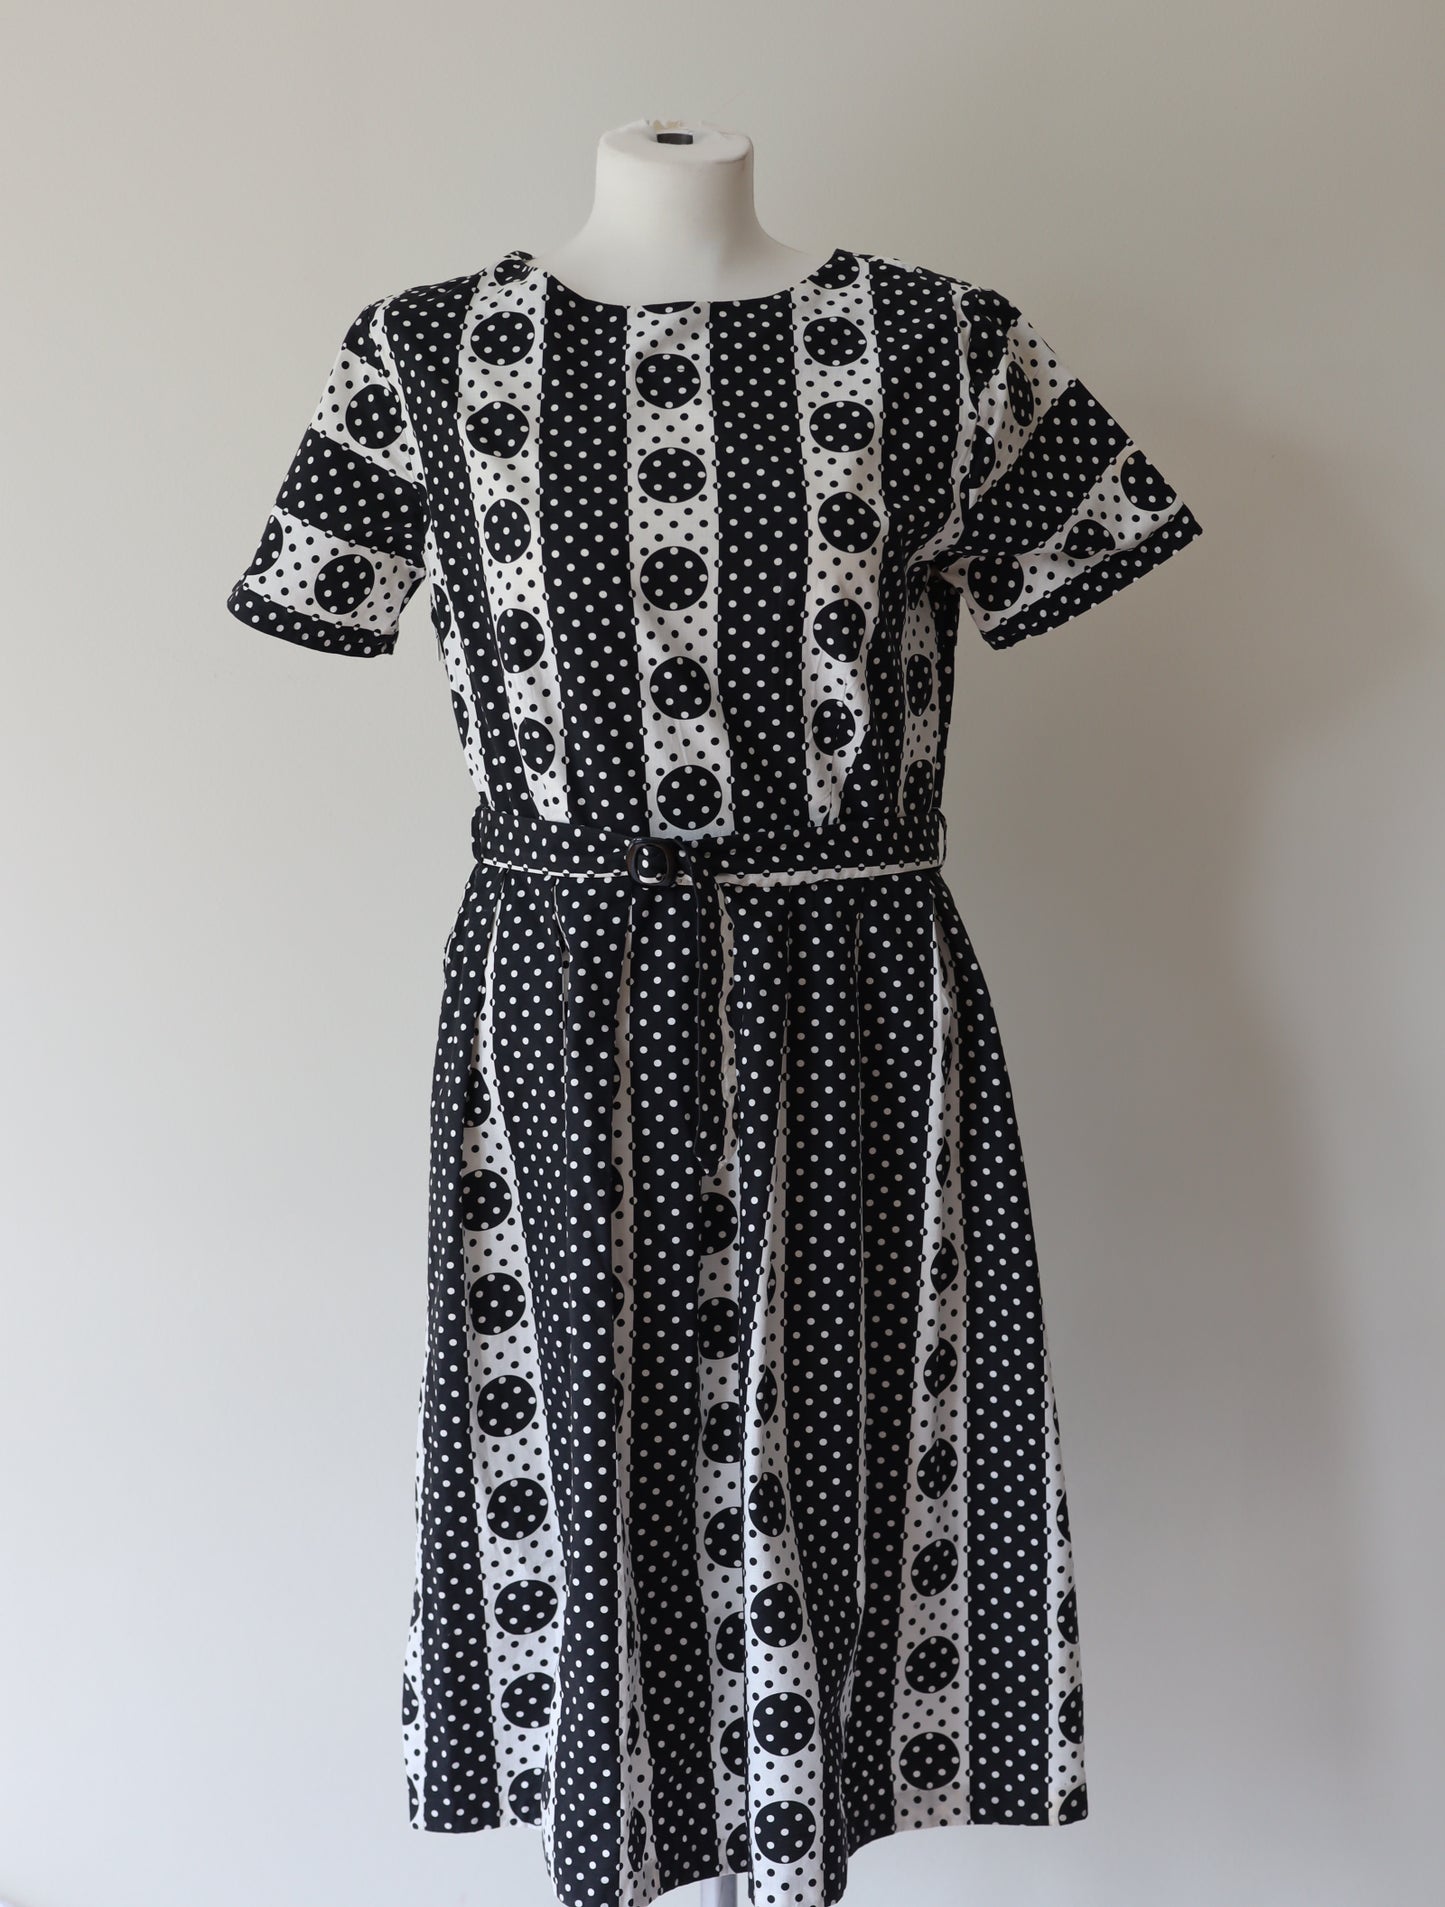 Vintage kjole i bomull - svart- og hvitmønstret